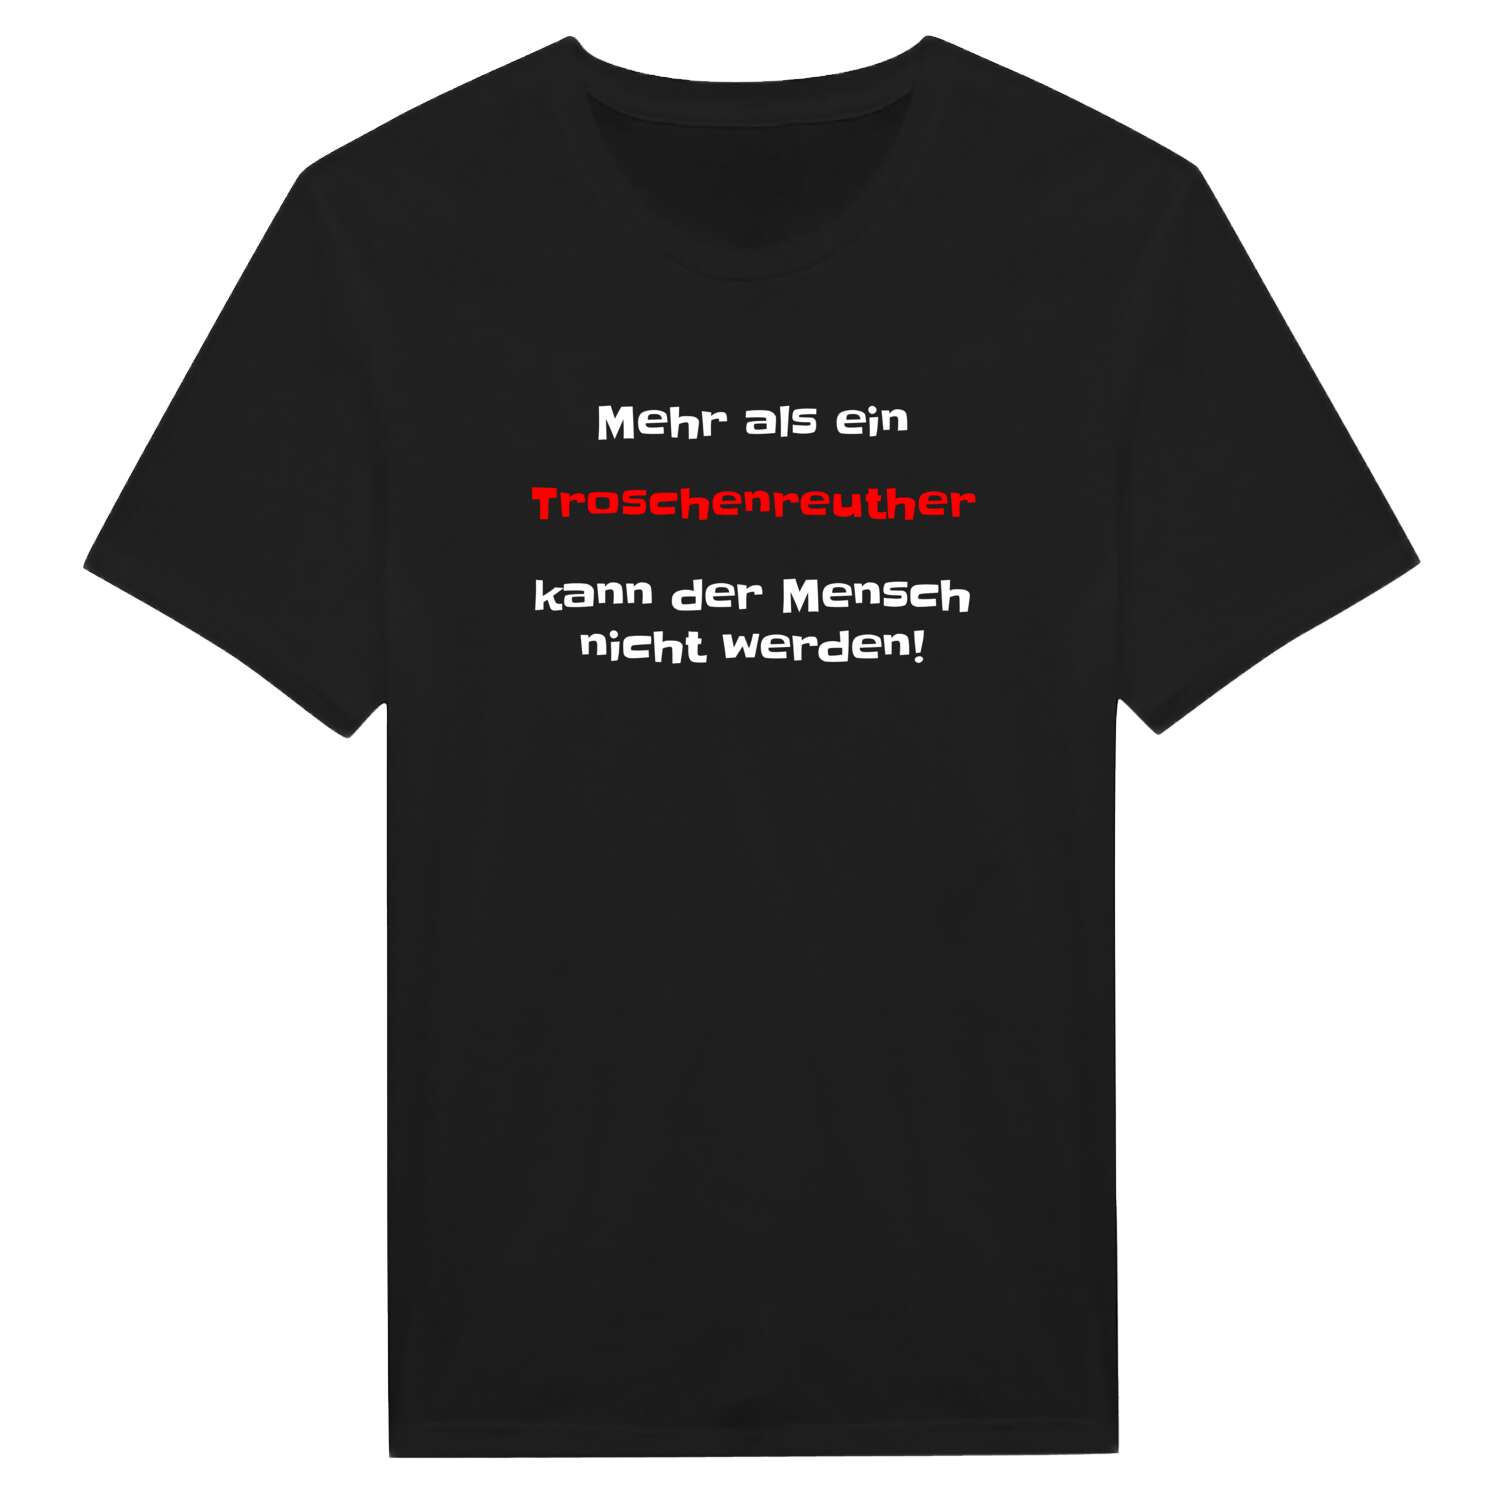 Troschenreuth T-Shirt »Mehr als ein«